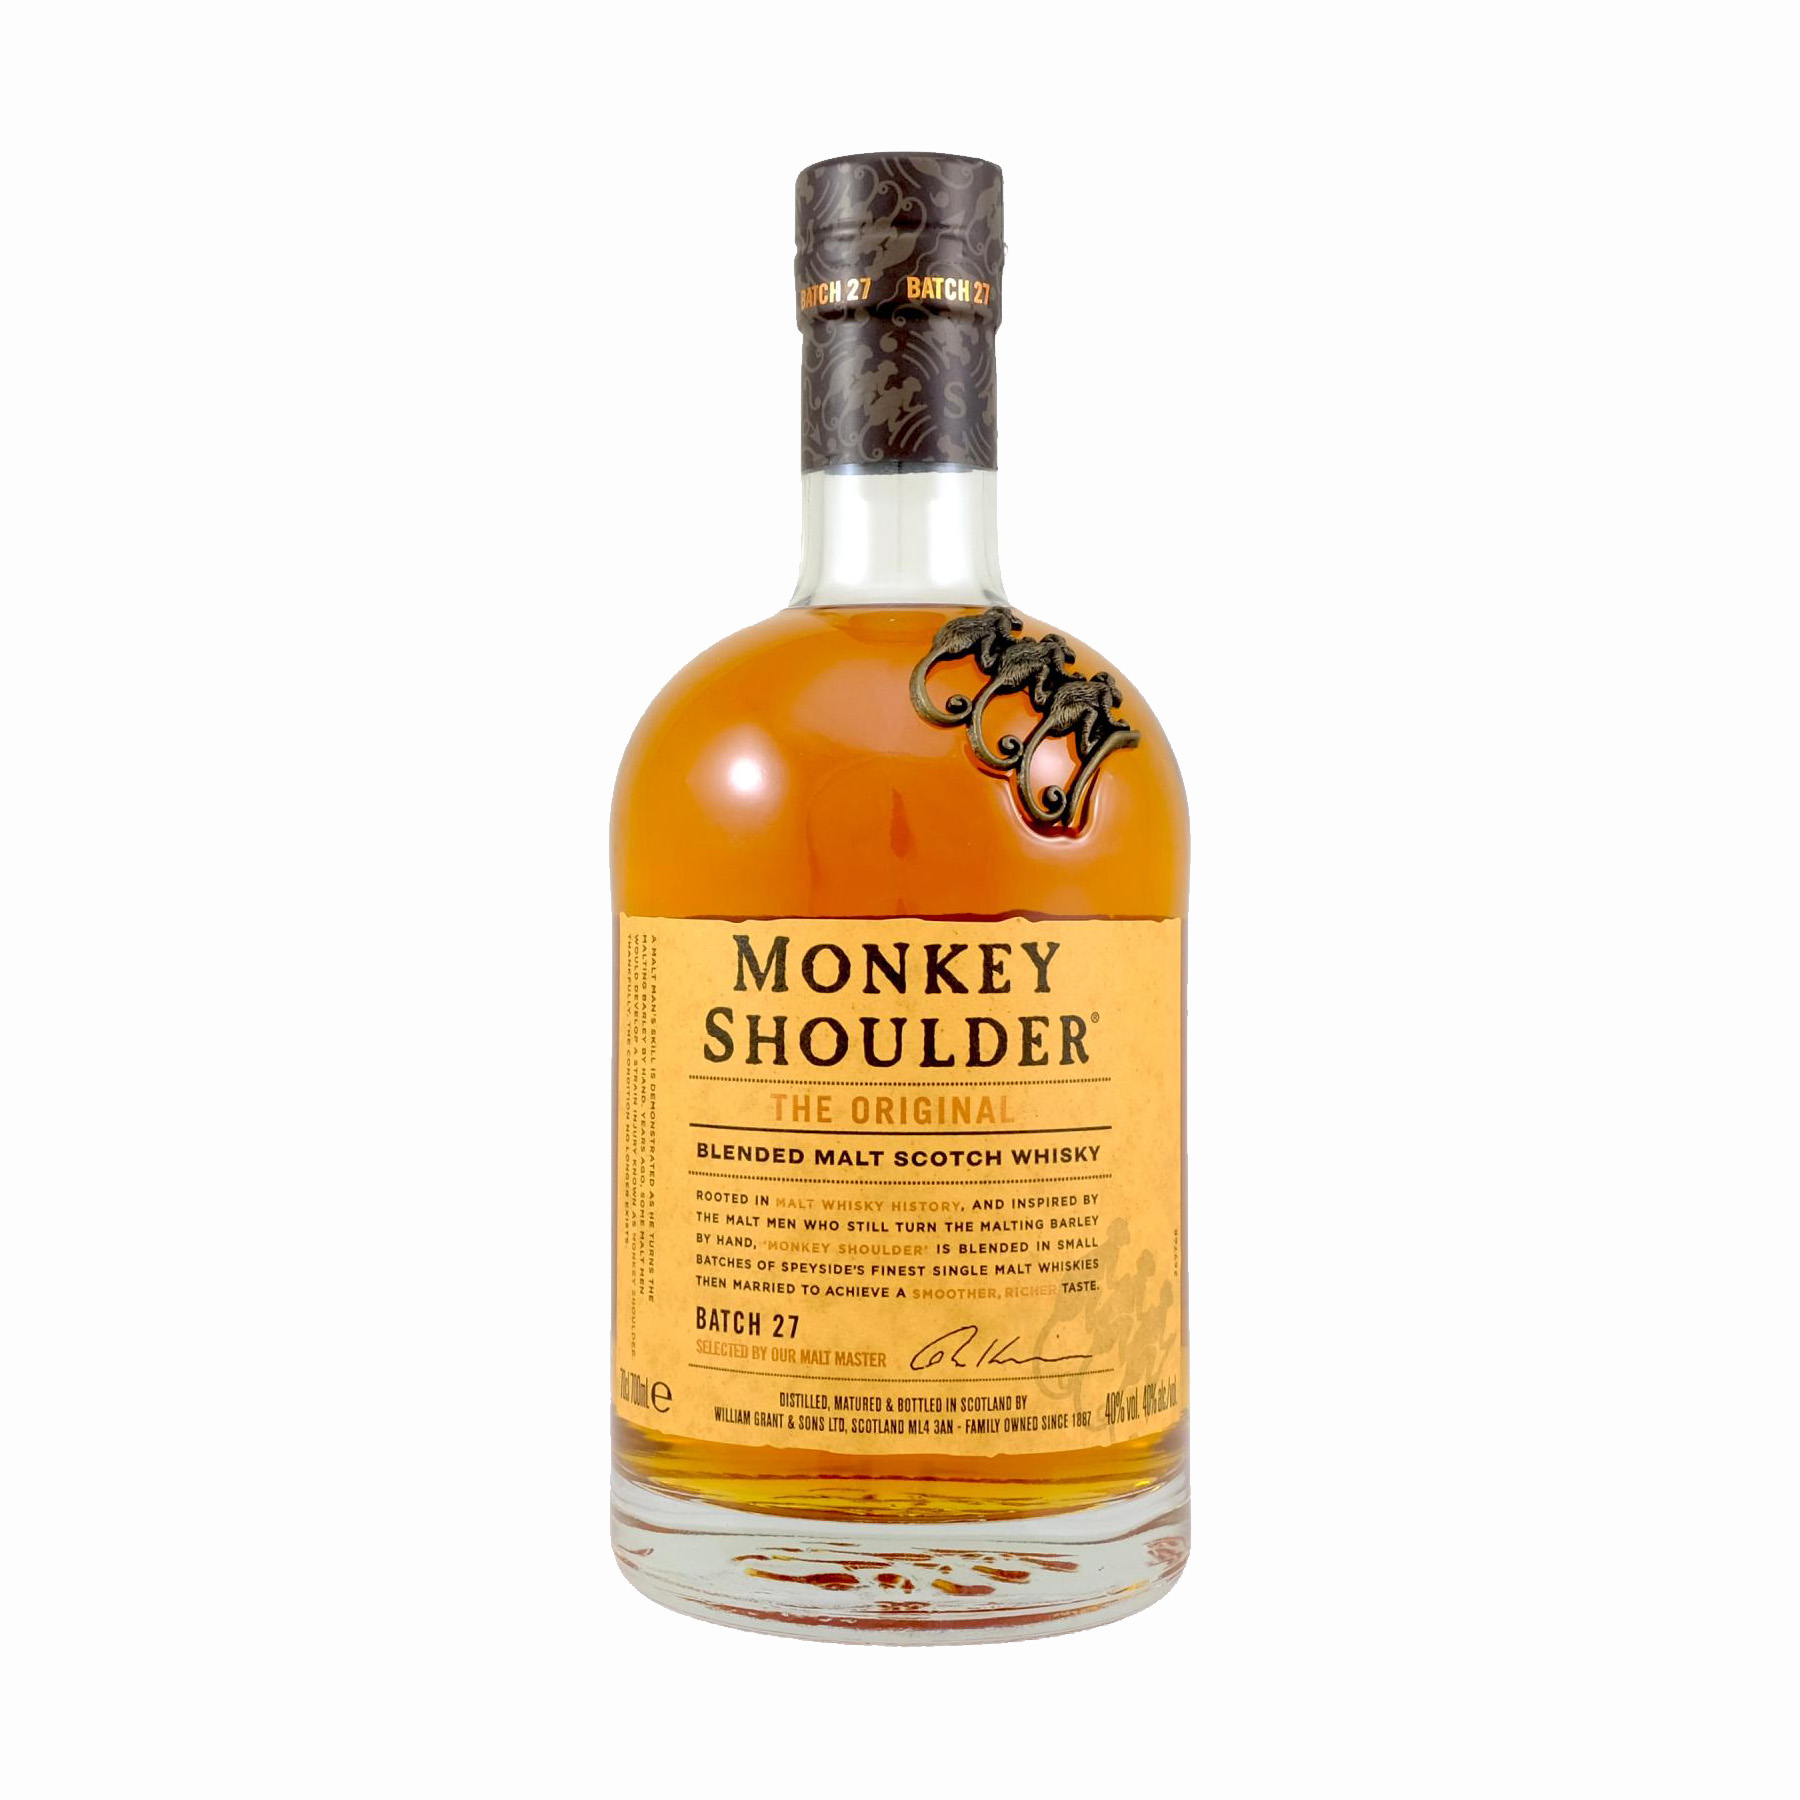 Limited Blended Malt Scotch Ghana – Ledrop Monkey Shoulder -